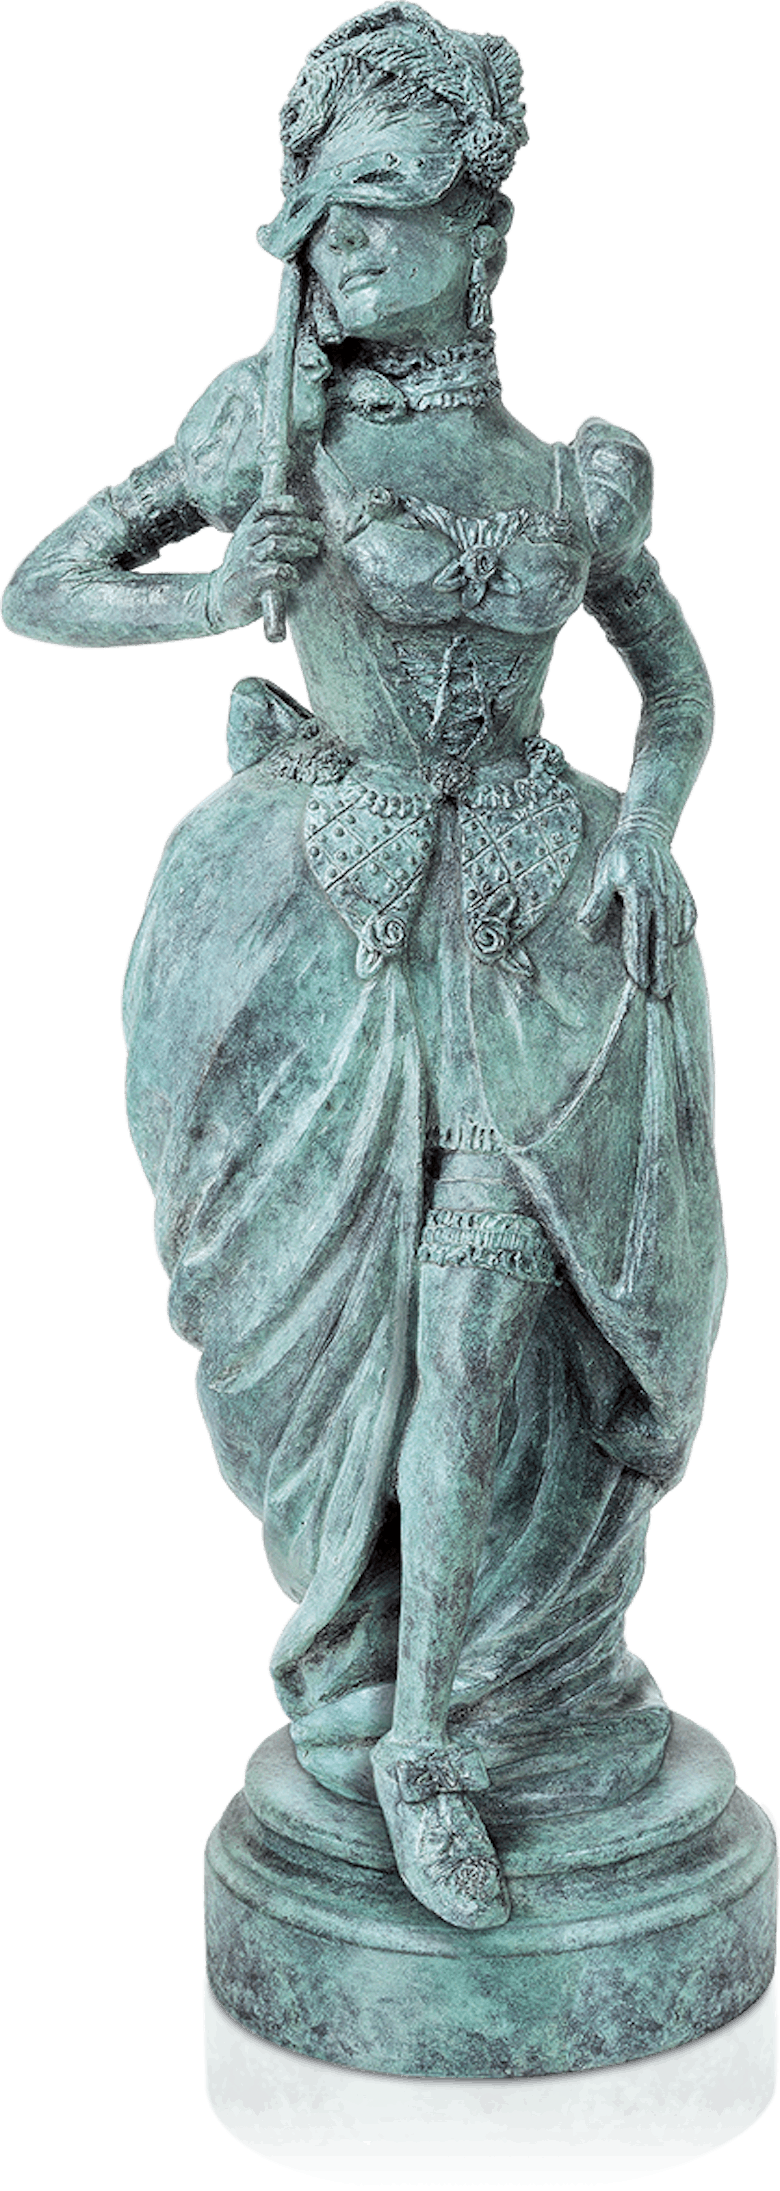 Bronzefigur Koketterie von Thomas Schöne